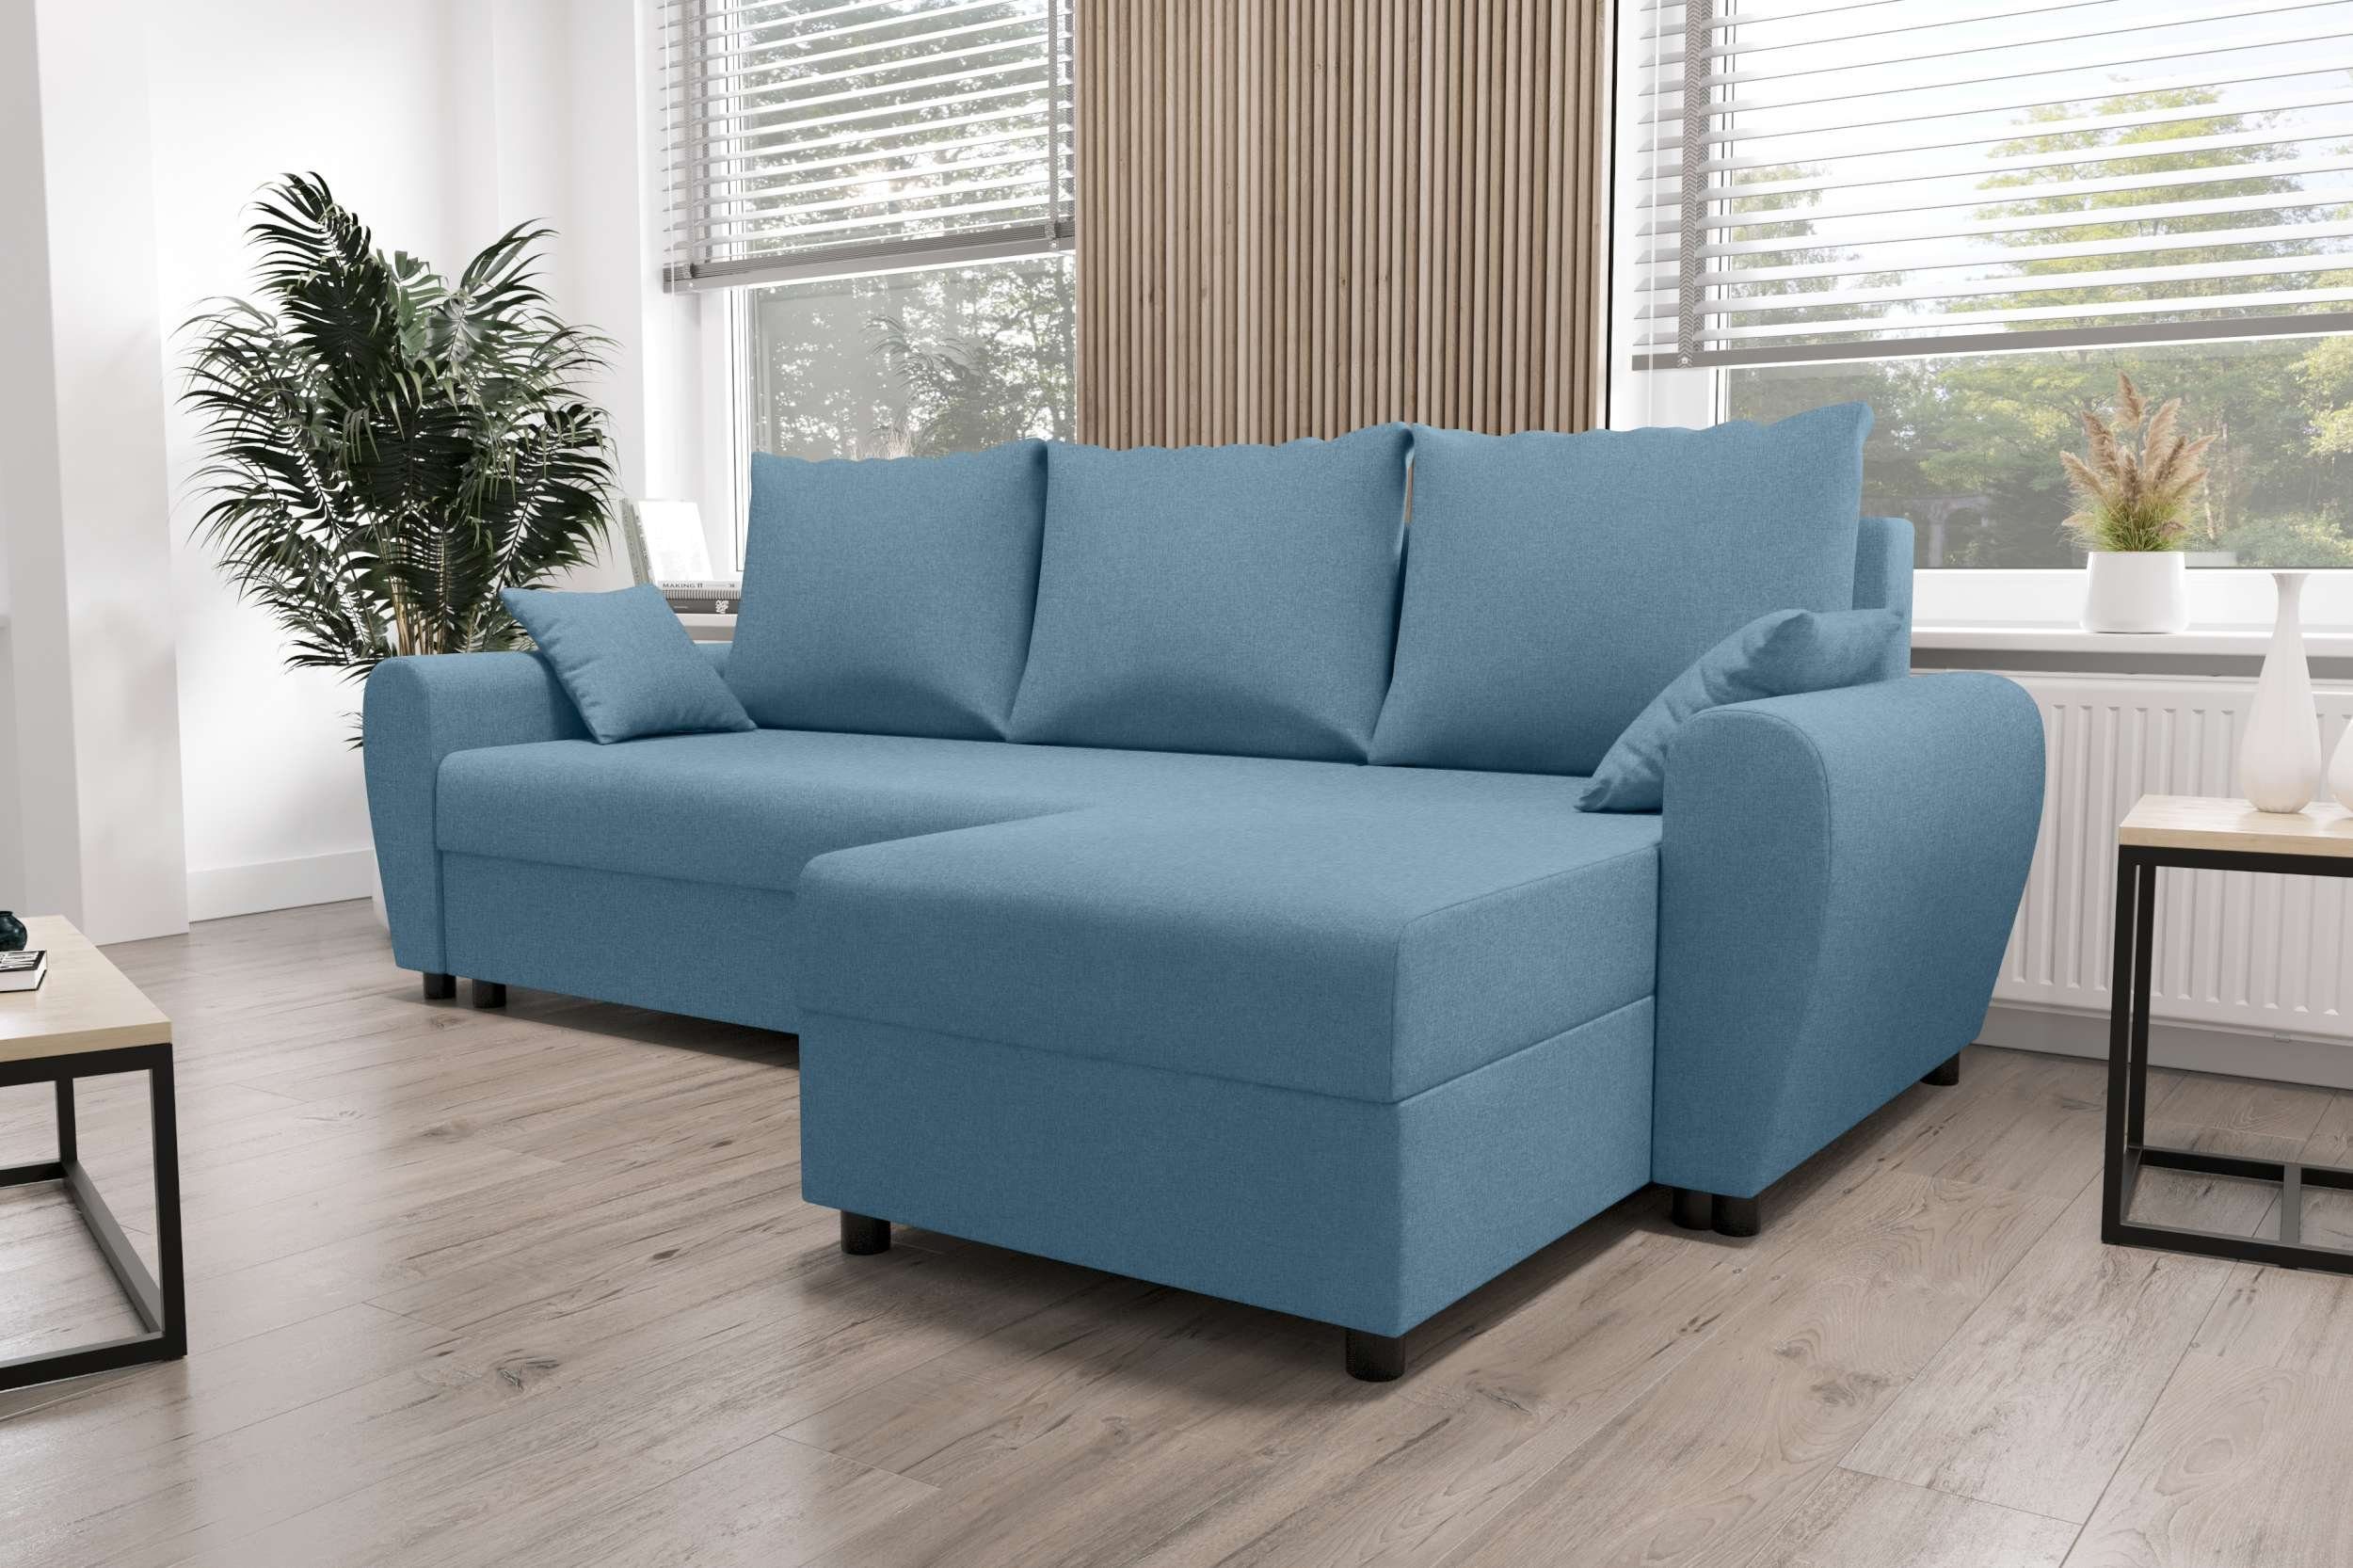 Melina, mit Sofa, Bettfunktion, Design Sitzkomfort, Stylefy Ecksofa L-Form, Modern mit Bettkasten, Eckcouch,